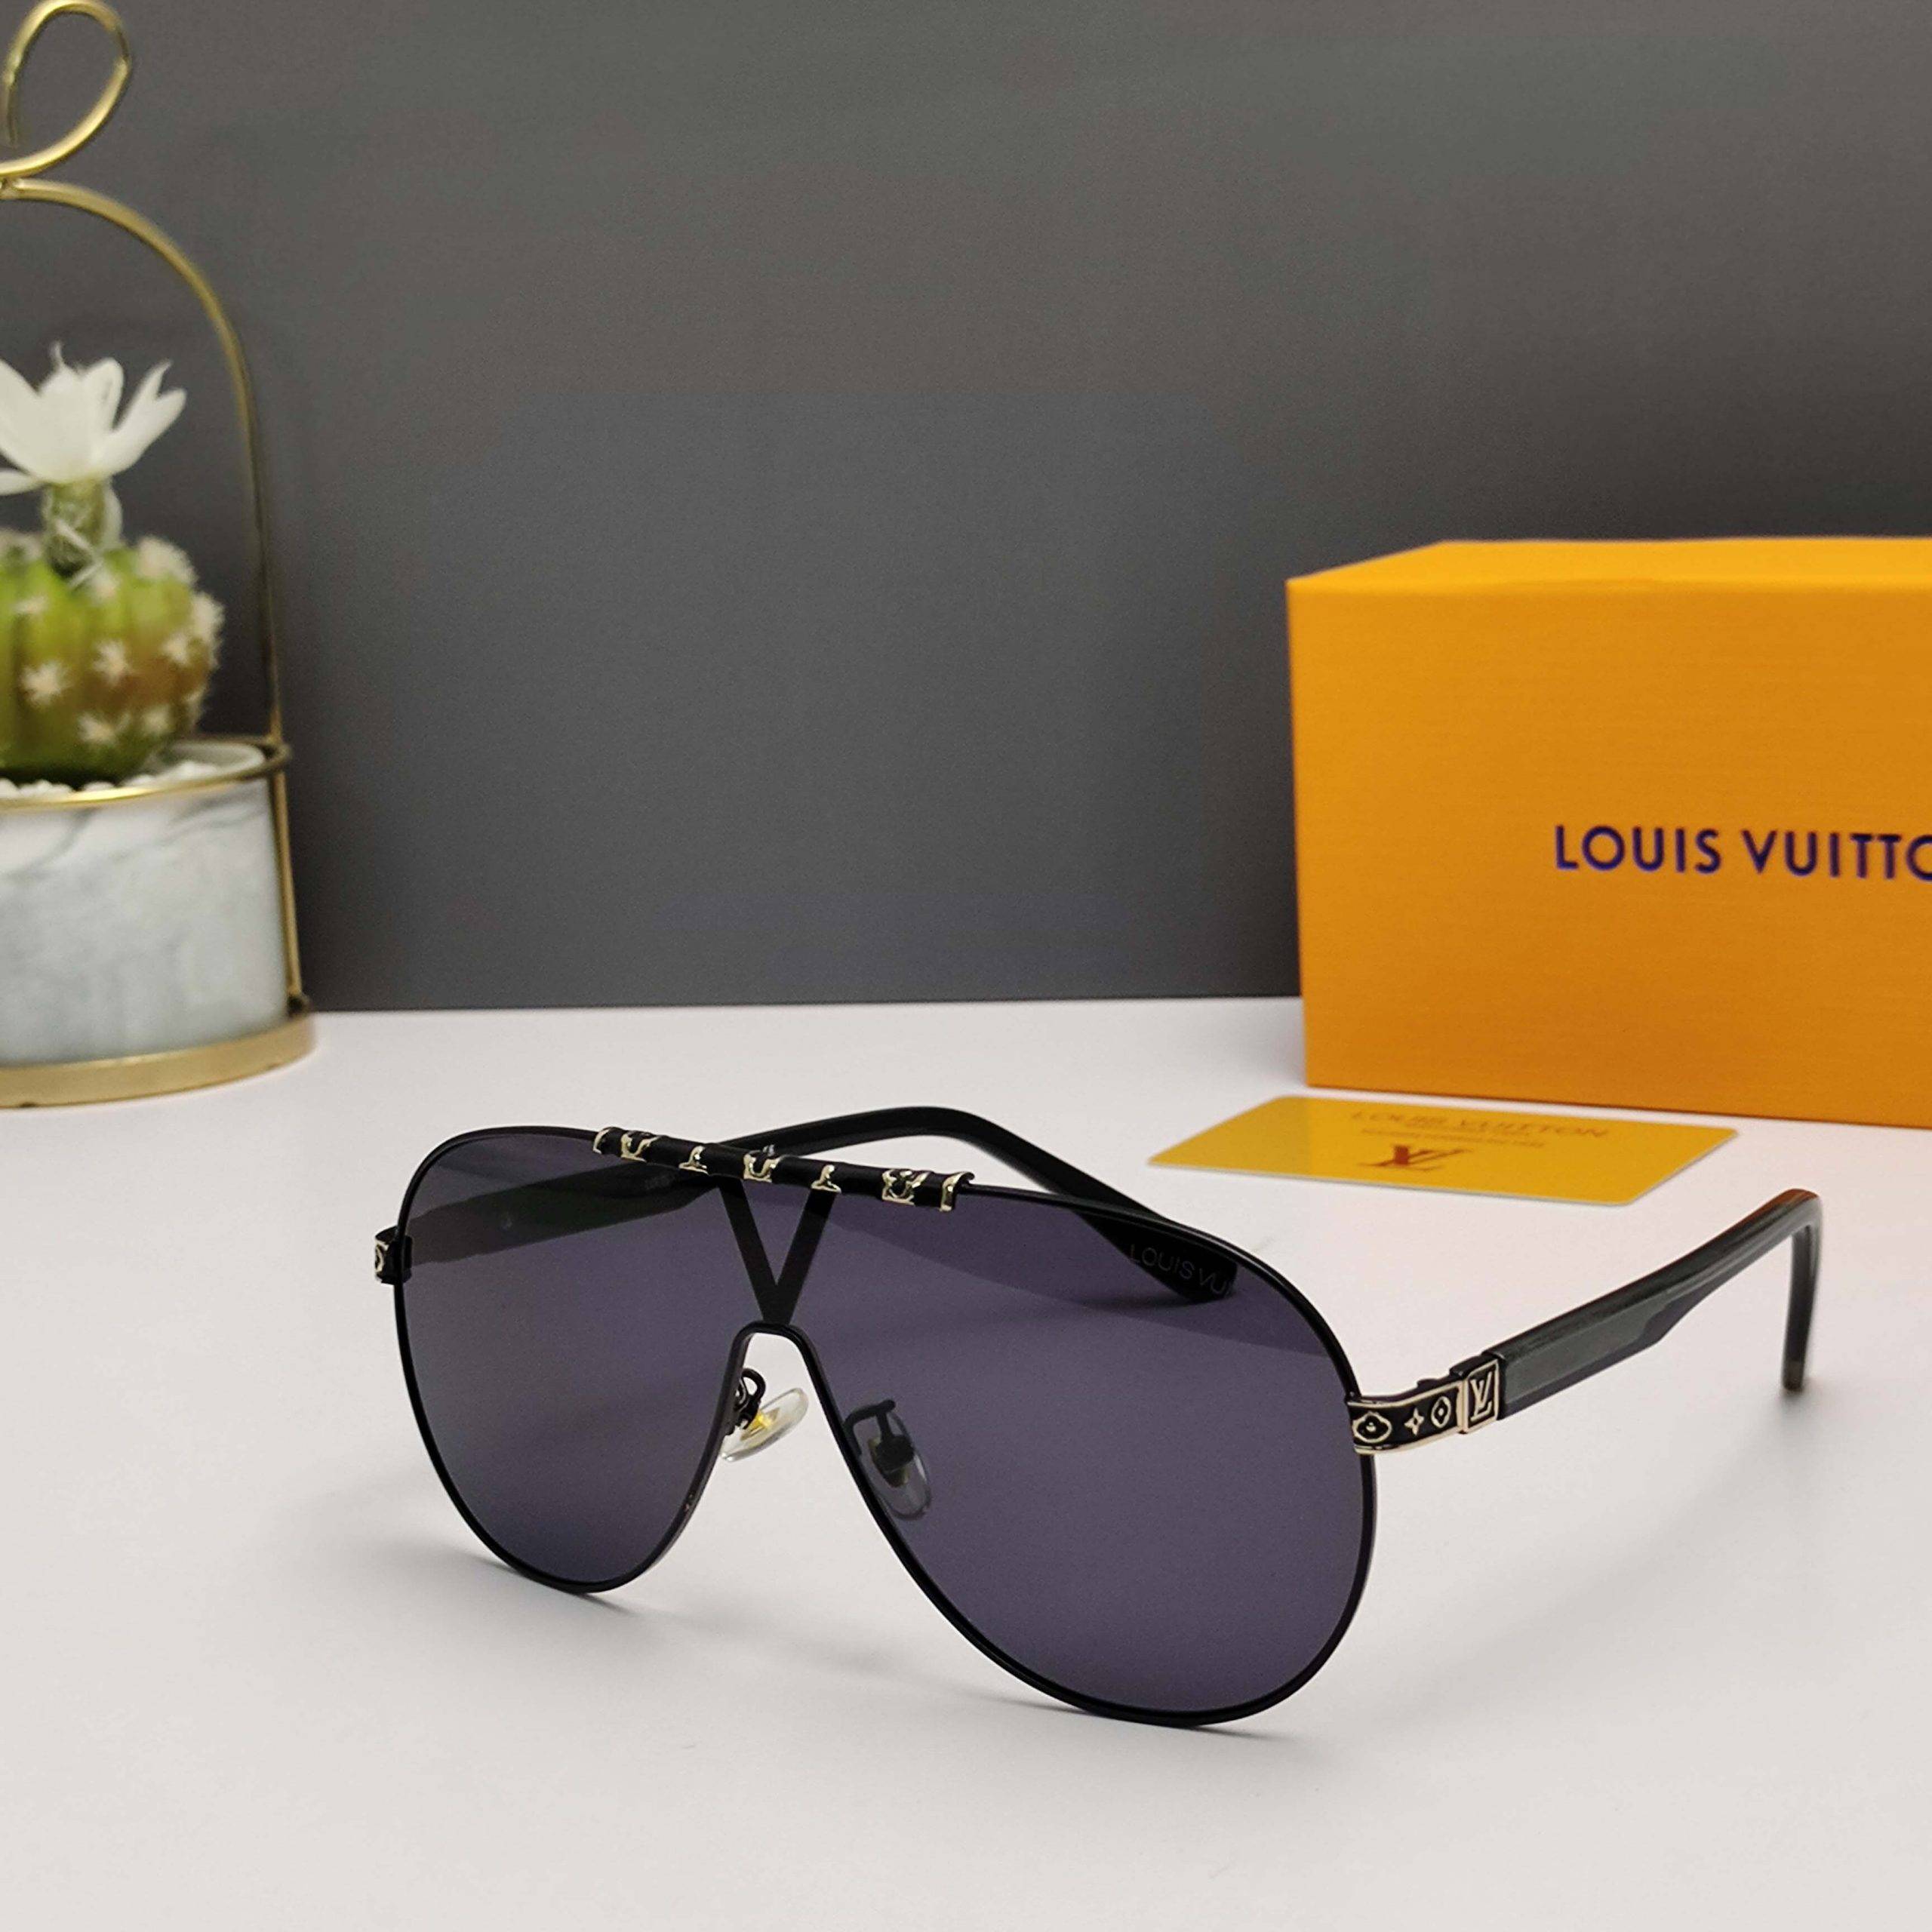 Novedades Mafer - 😍 Lentes Louis Vuitton modelo Evidence 👓